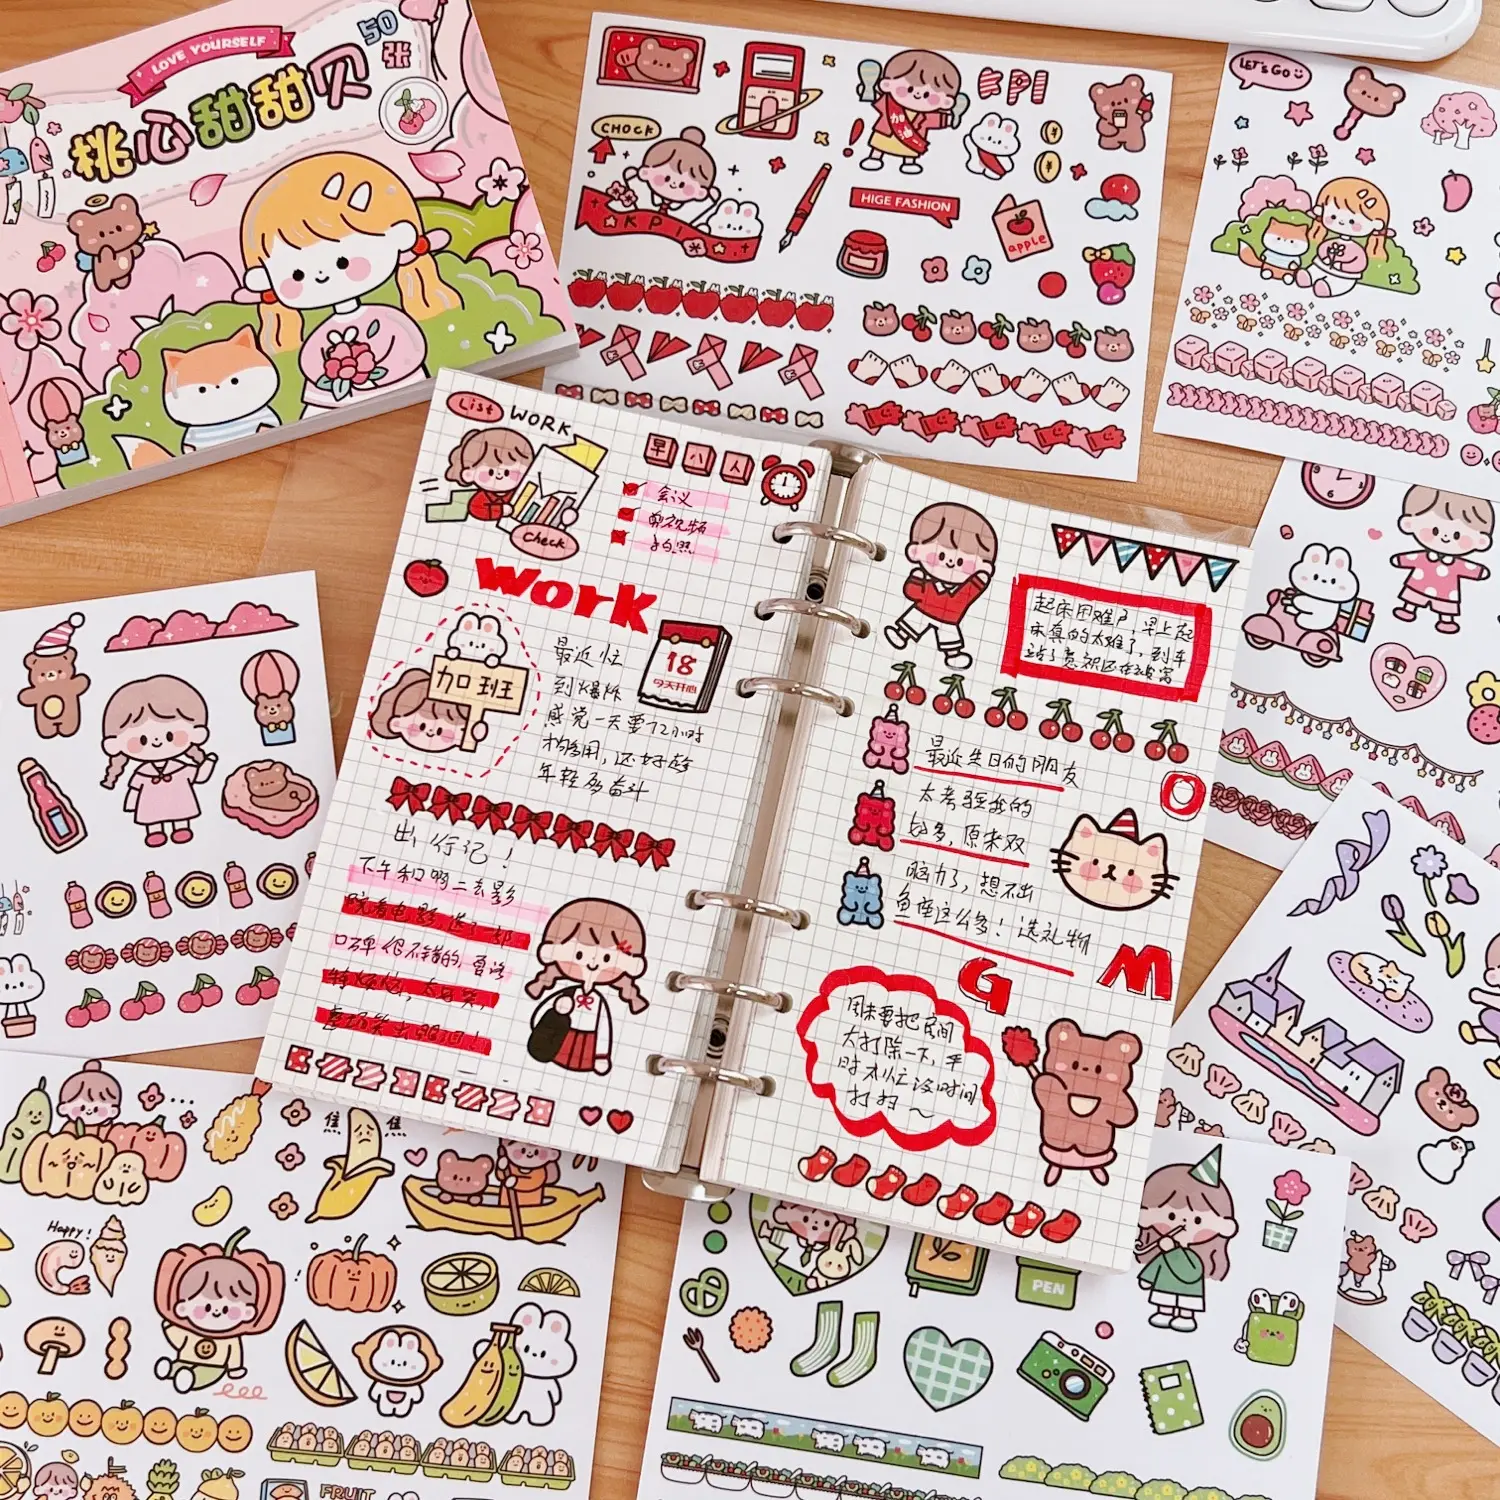 girl heart pocket book and paper sticker gift box cute cartoon influencer notebook DIY decorative materials